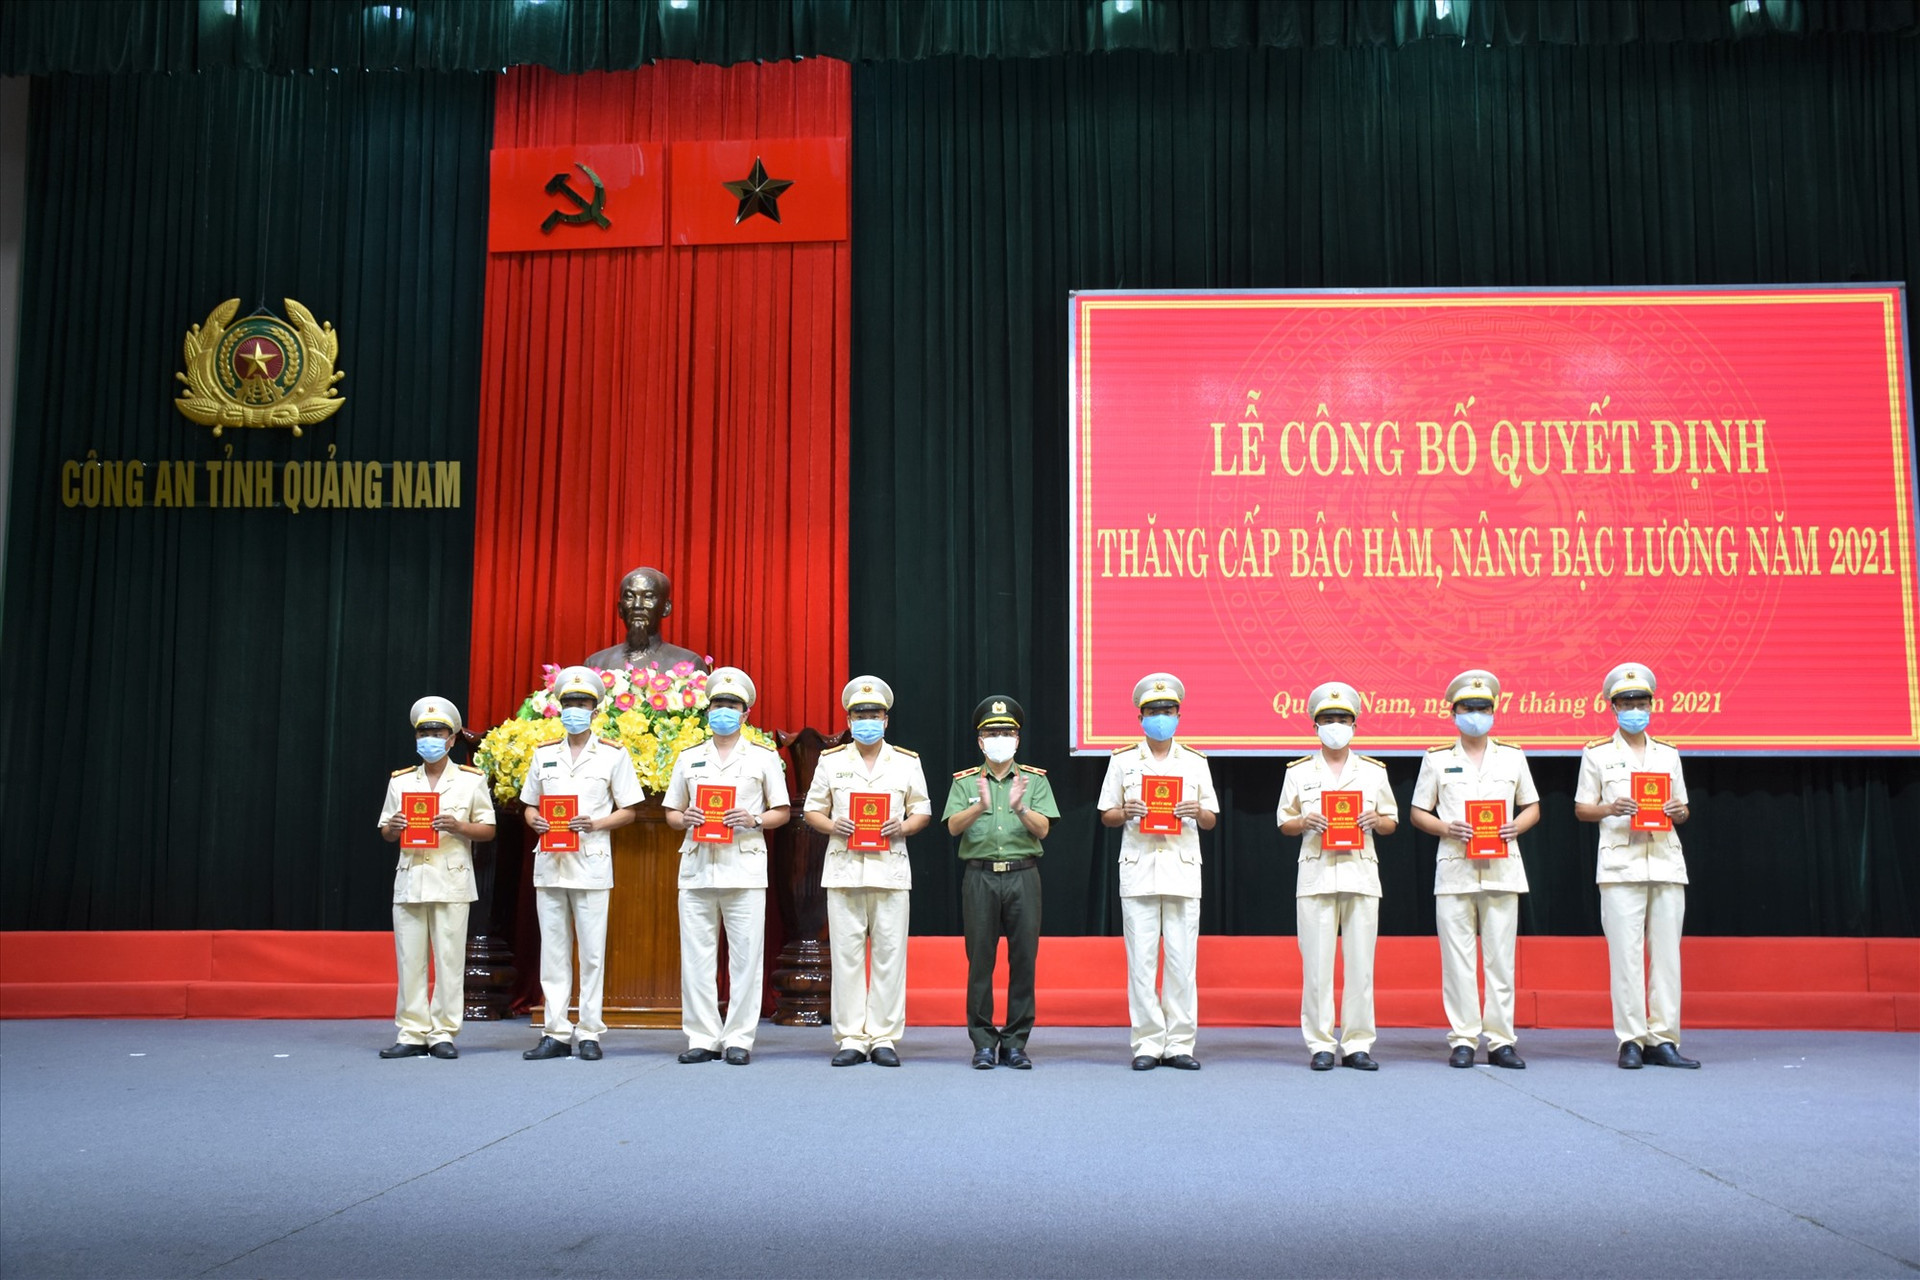 Thiếu tướng Nguyễn Đức Dũng - Giám đốc Công an tỉnh trao Quyết định thăng cấp bậc hàm, nâng bậc lương Thượng tá cho các đồng chí đến niên hạn năm 2021.